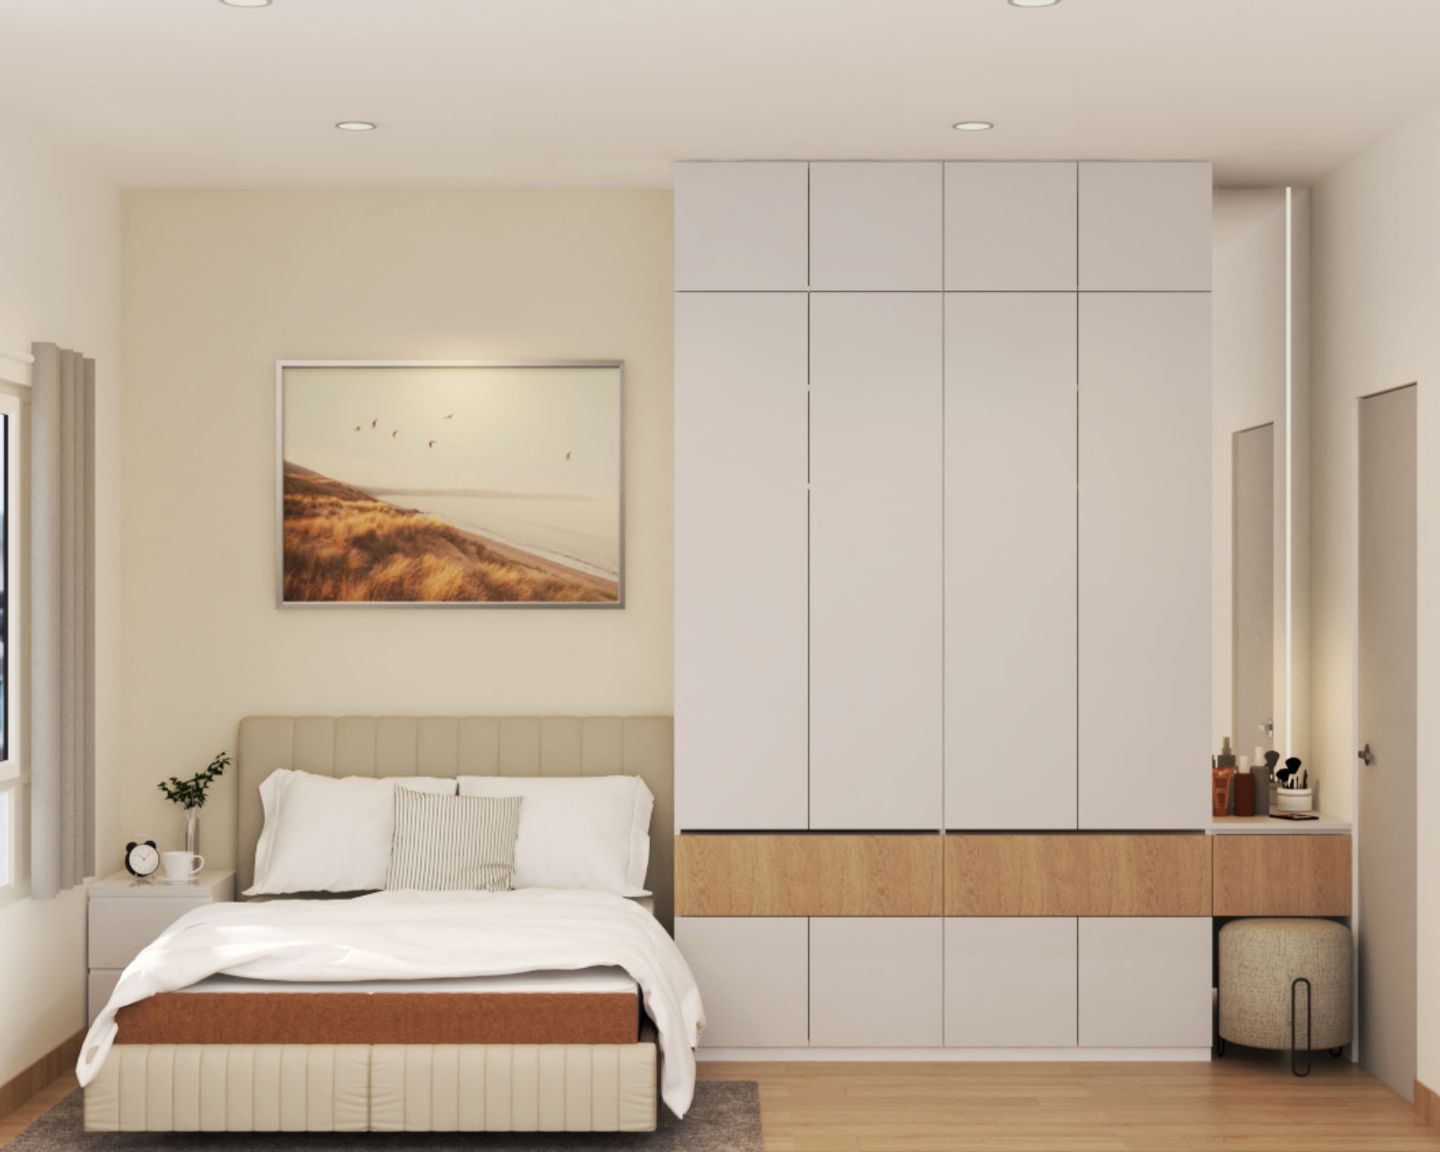 Scandinavian Bedroom Design With Low Bed And Floor-To-Ceiling Swing Wardrobe - Livspace